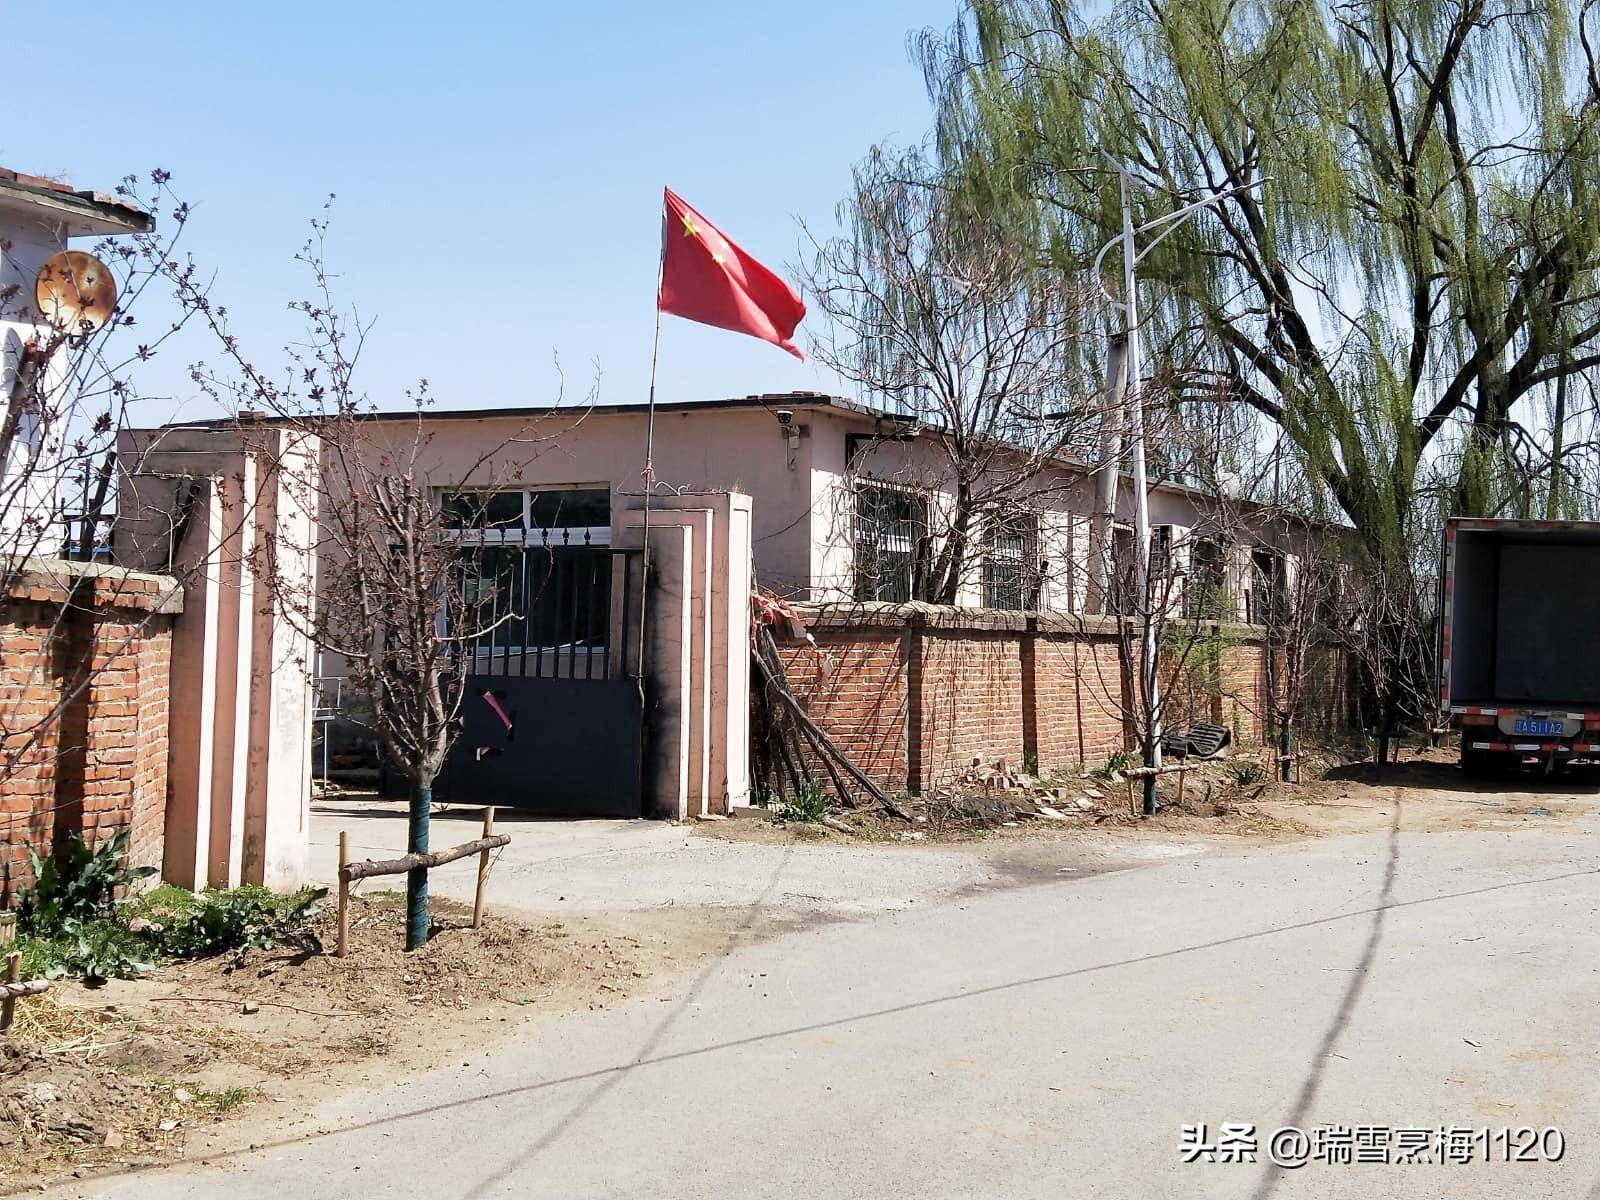 学校教育宋家岗小学,建于1946年